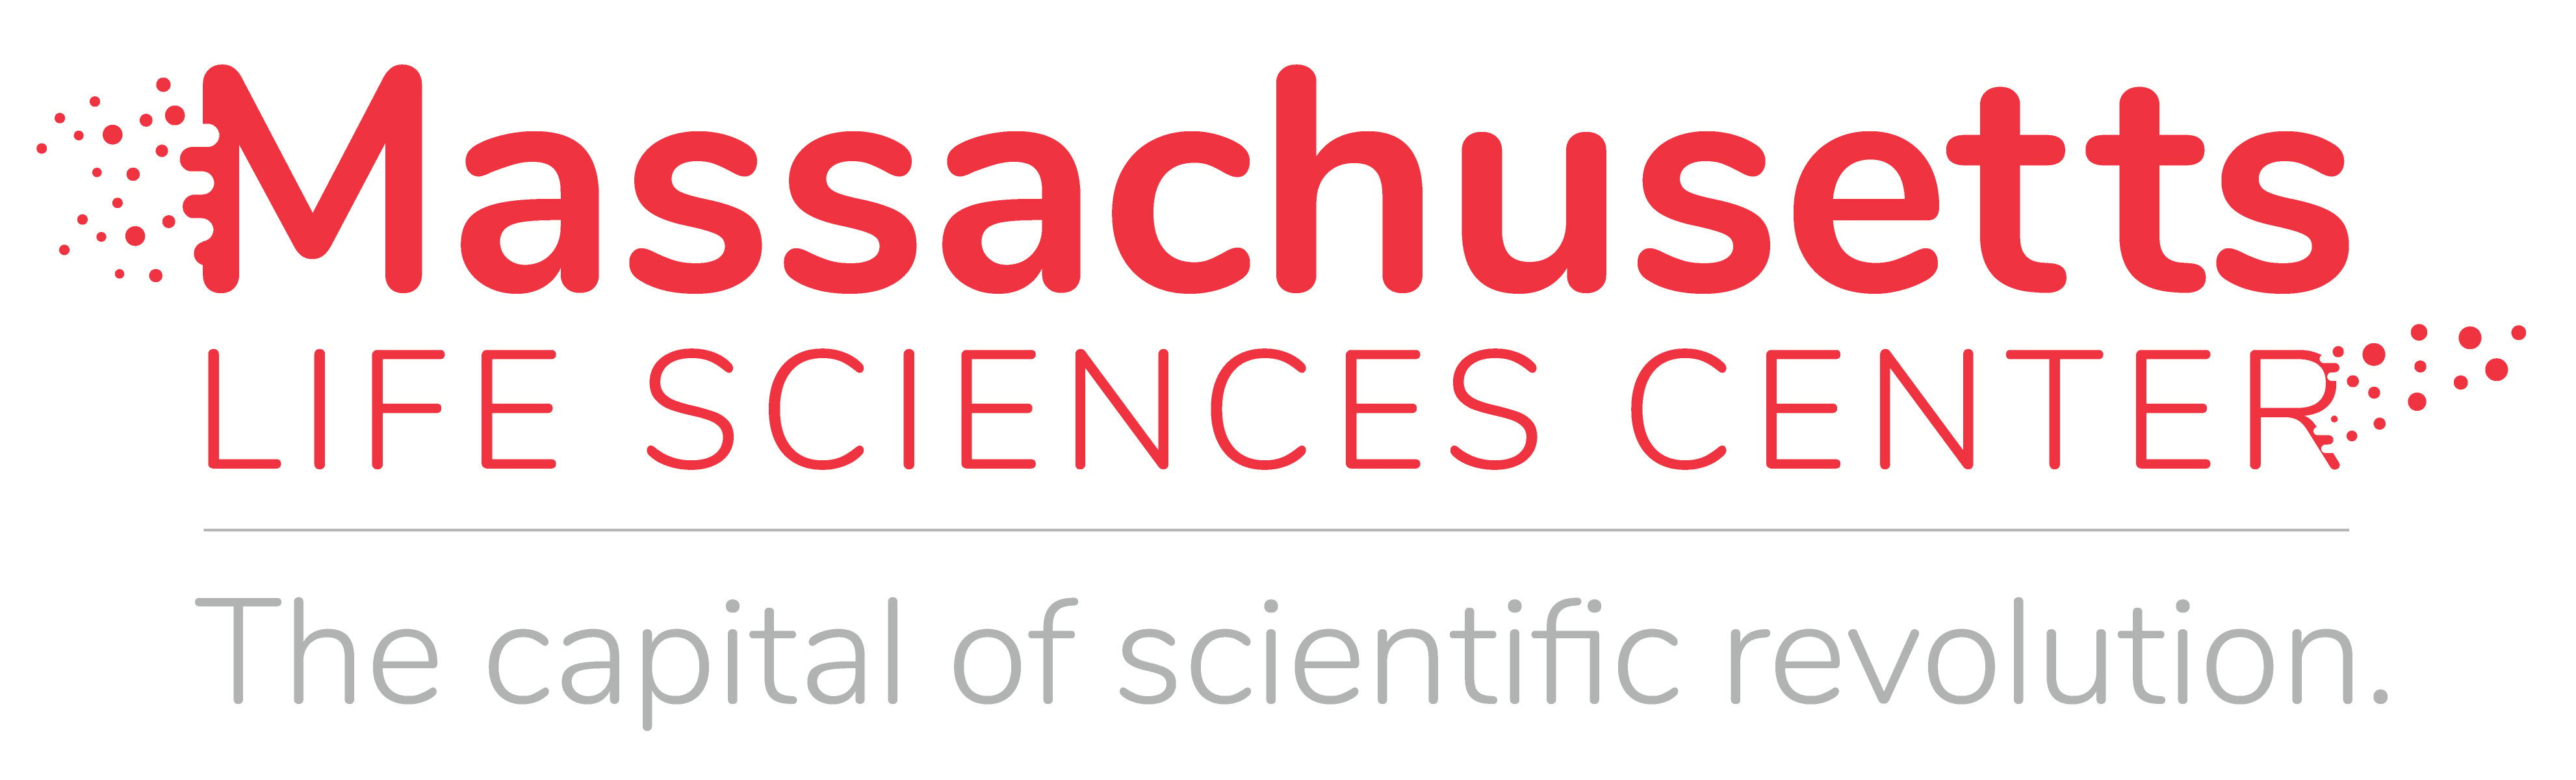 Massachusetts life sciences center logo